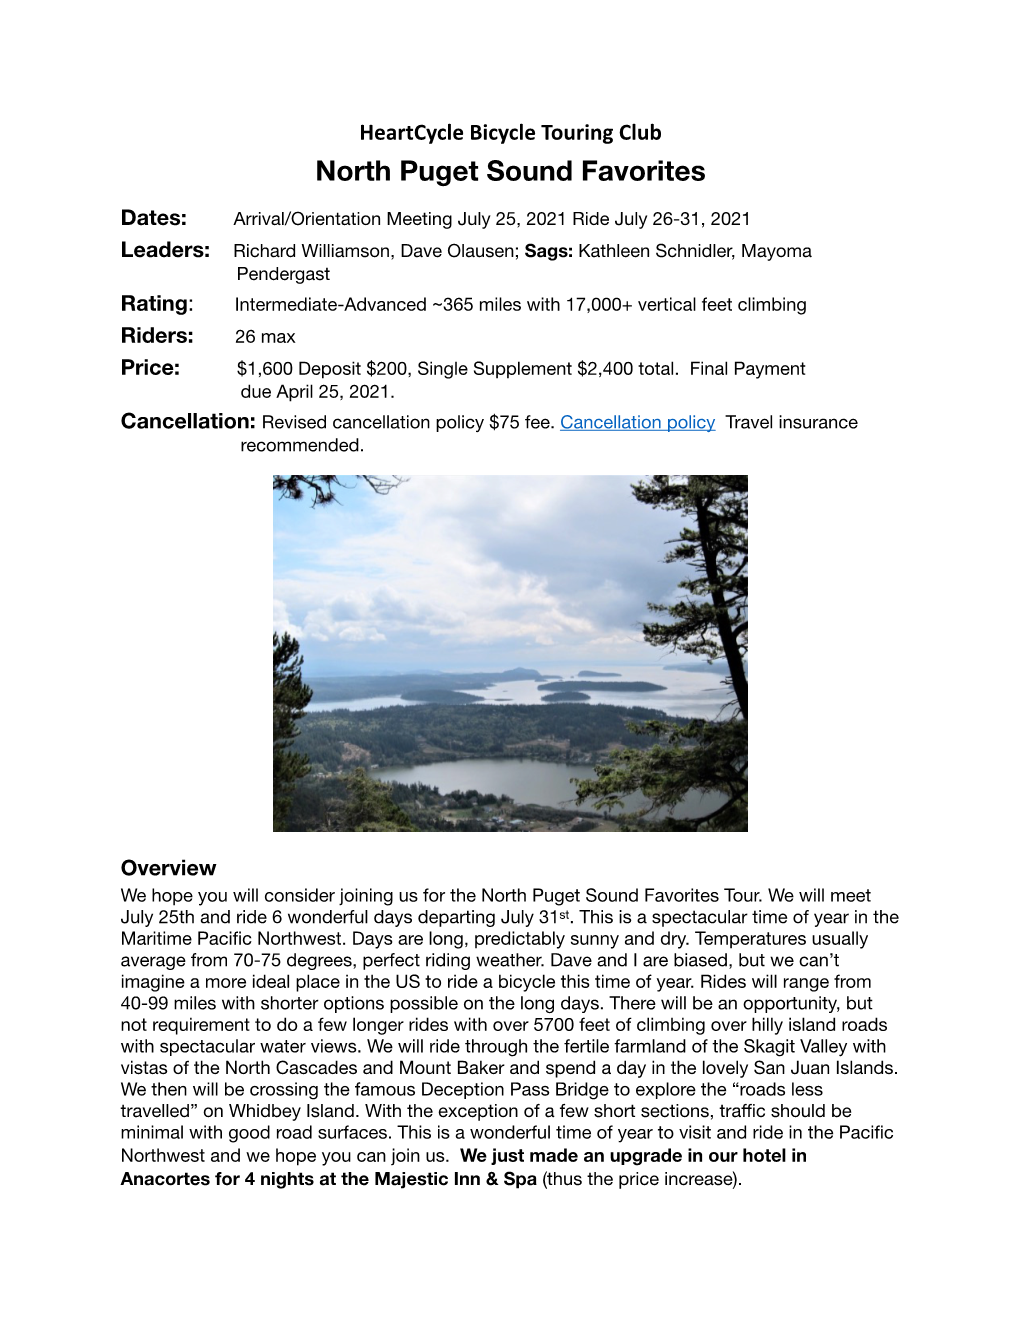 N. Puget Sound Favorites